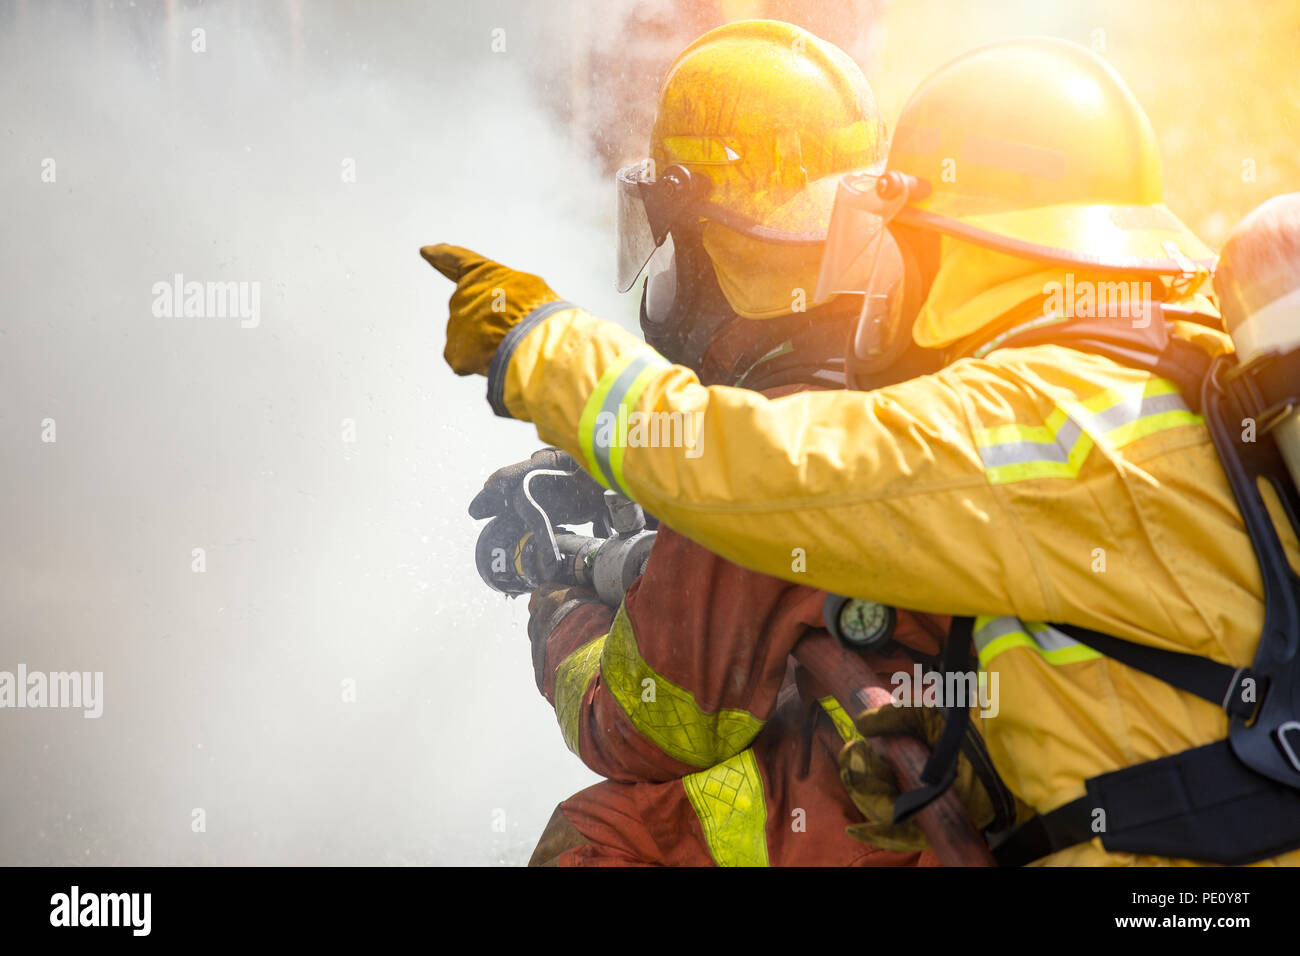 La acción de cierre de dos bomberos de pulverización de agua de alta presión por la boquilla al fuego rodean por el humo con brillos y espacio de copia Foto de stock